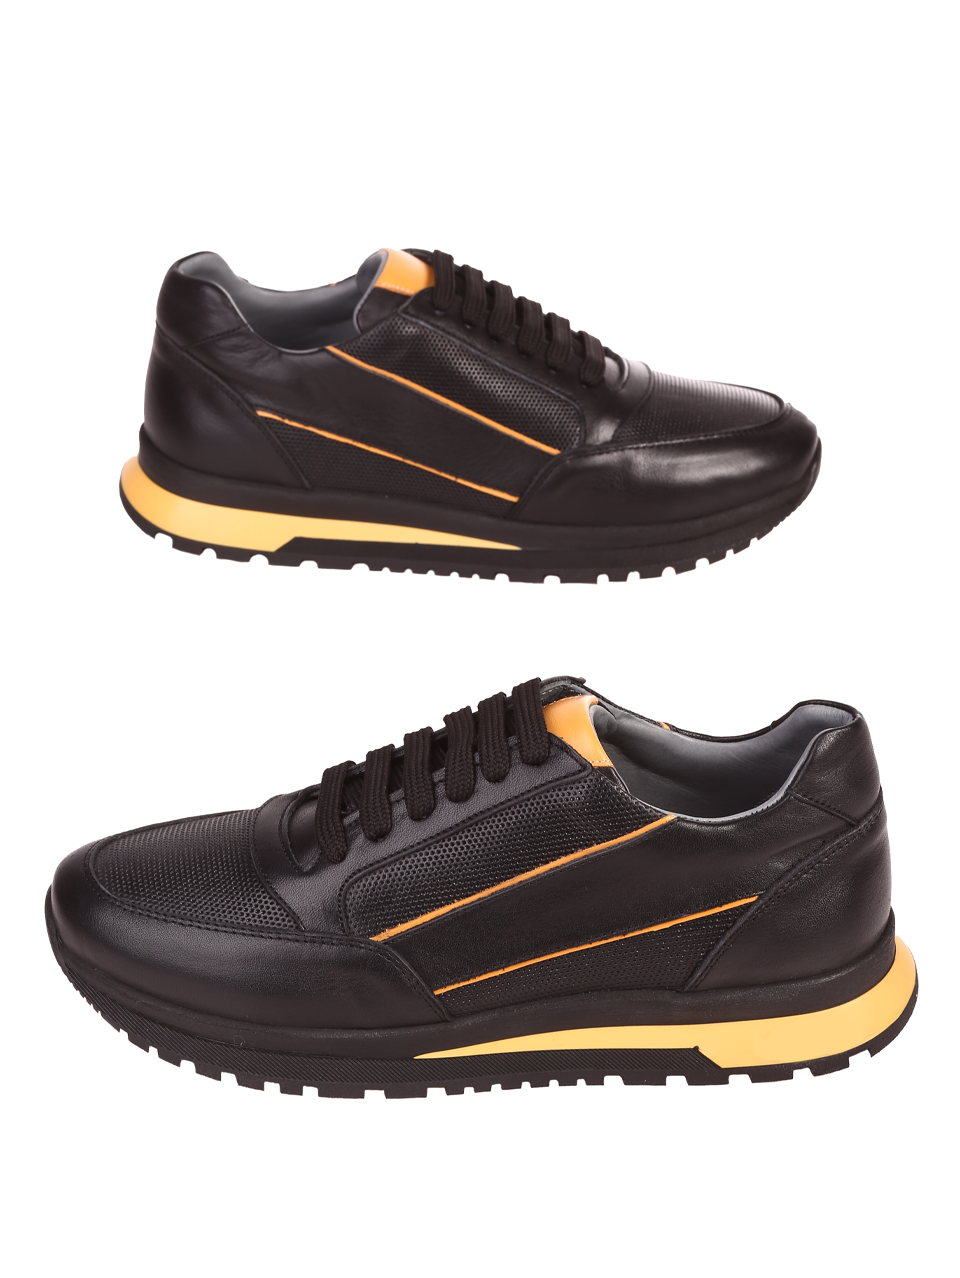 Ежедневни мъжки обувки от естествена кожа 7AT-24358 black/yellow